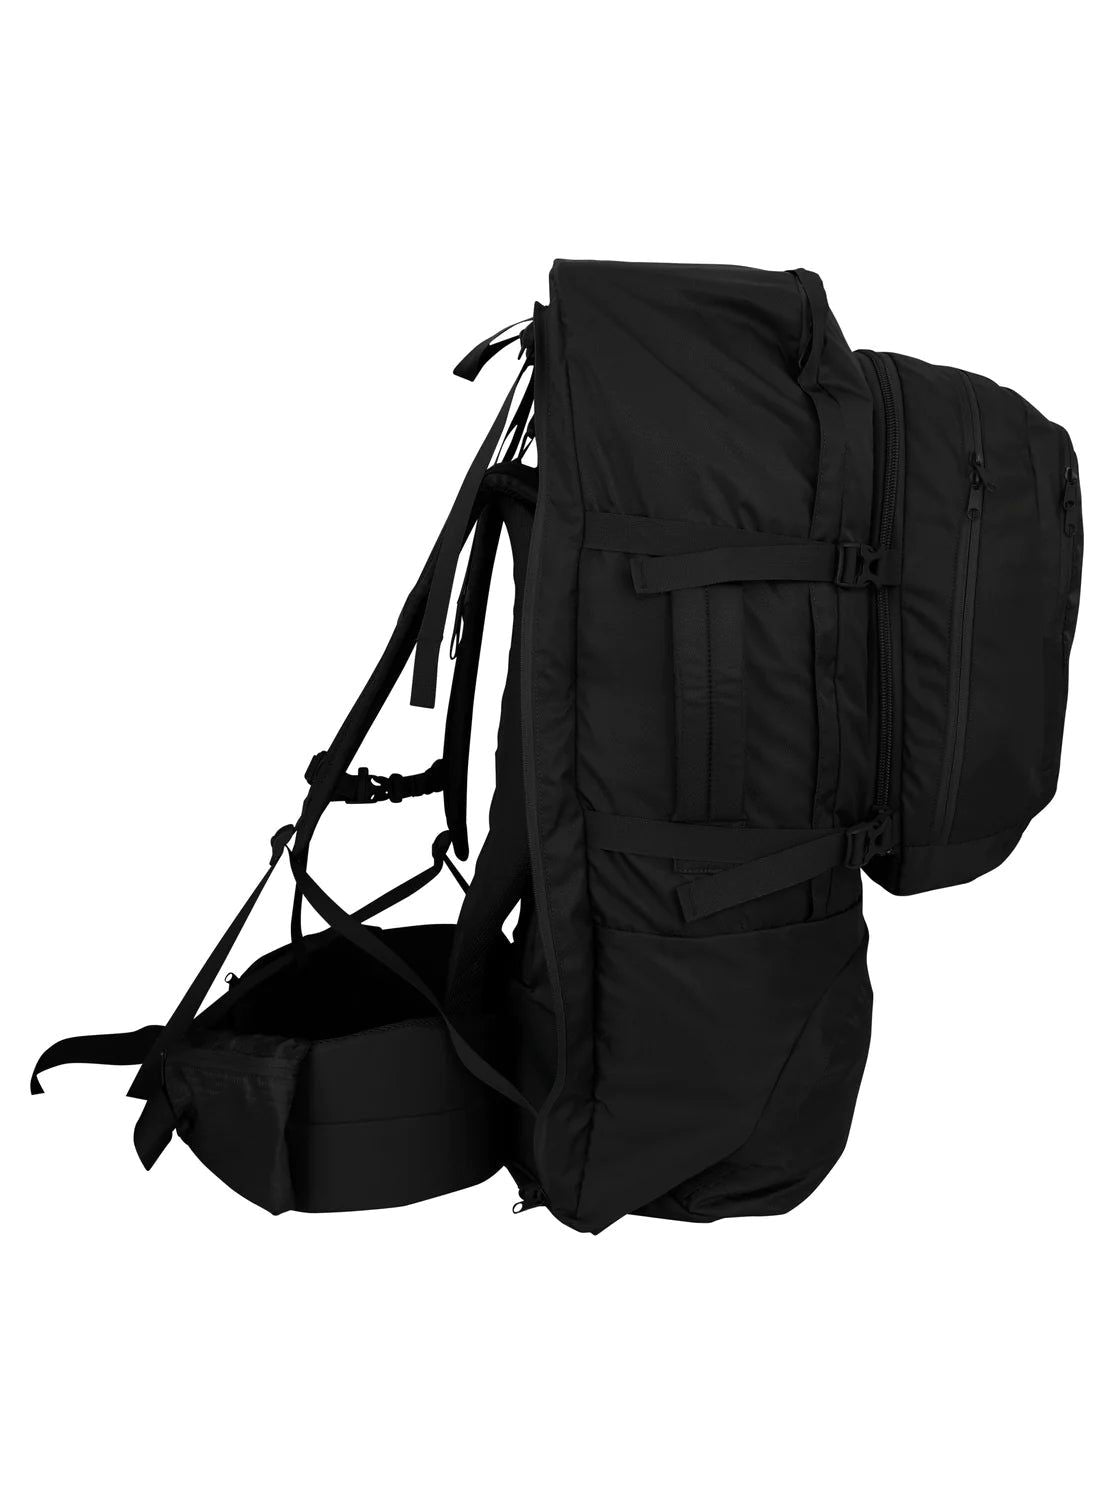 BlackWolf Fulham 60 Backpack - rainbowbags